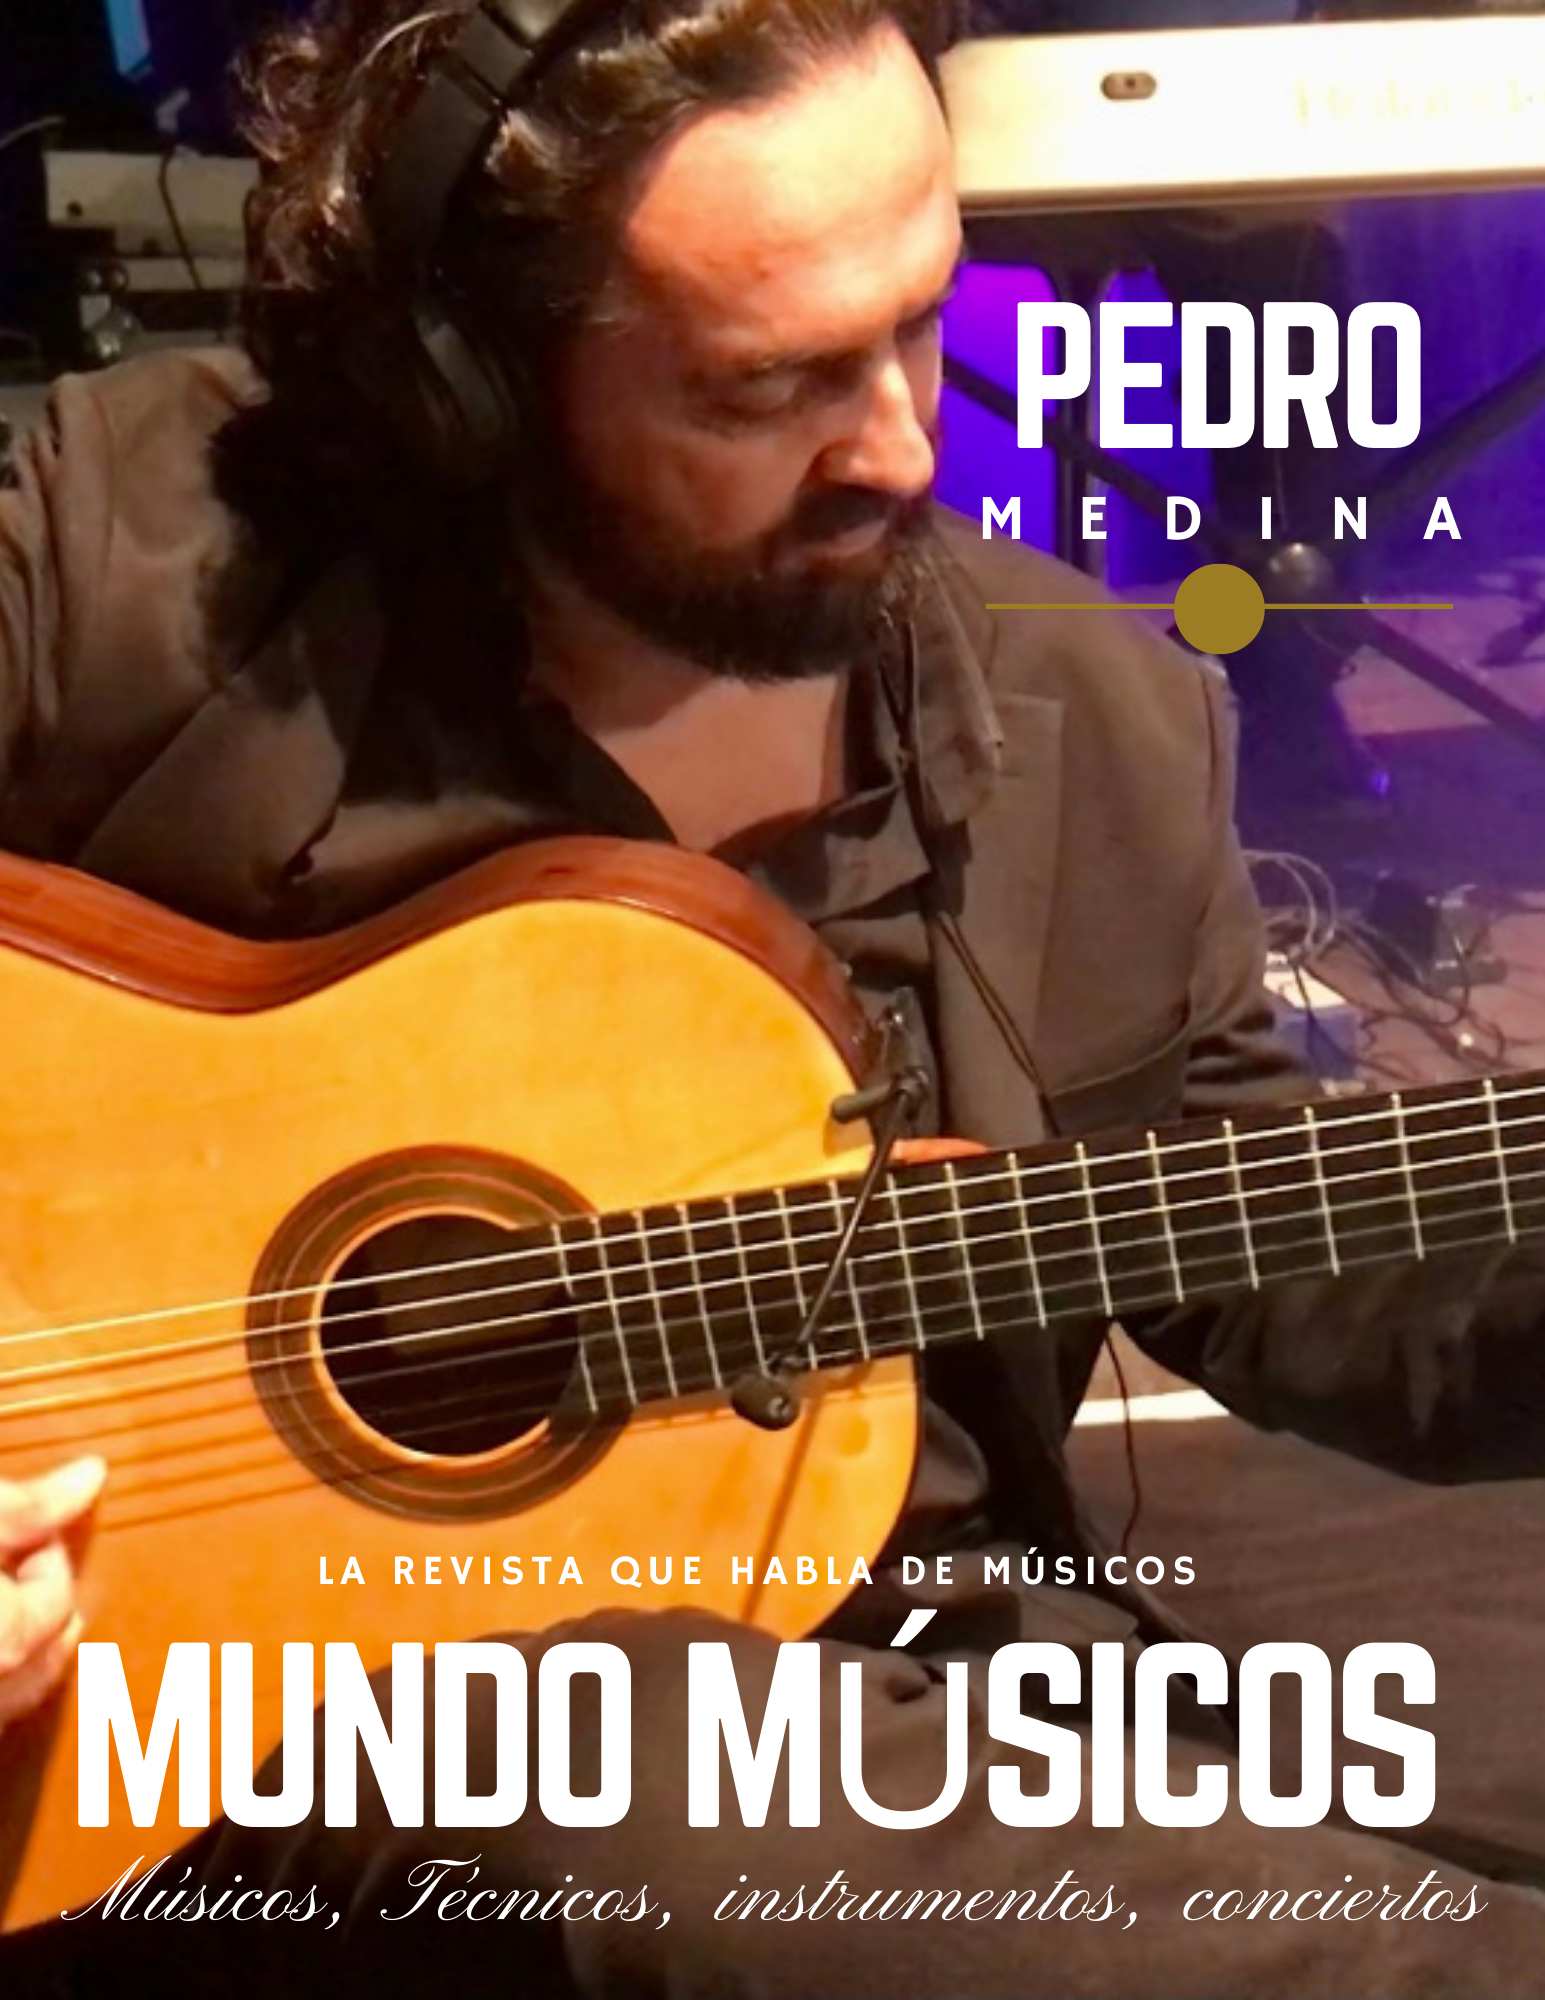 Pedro Medina, guitarrista, productor y compositor